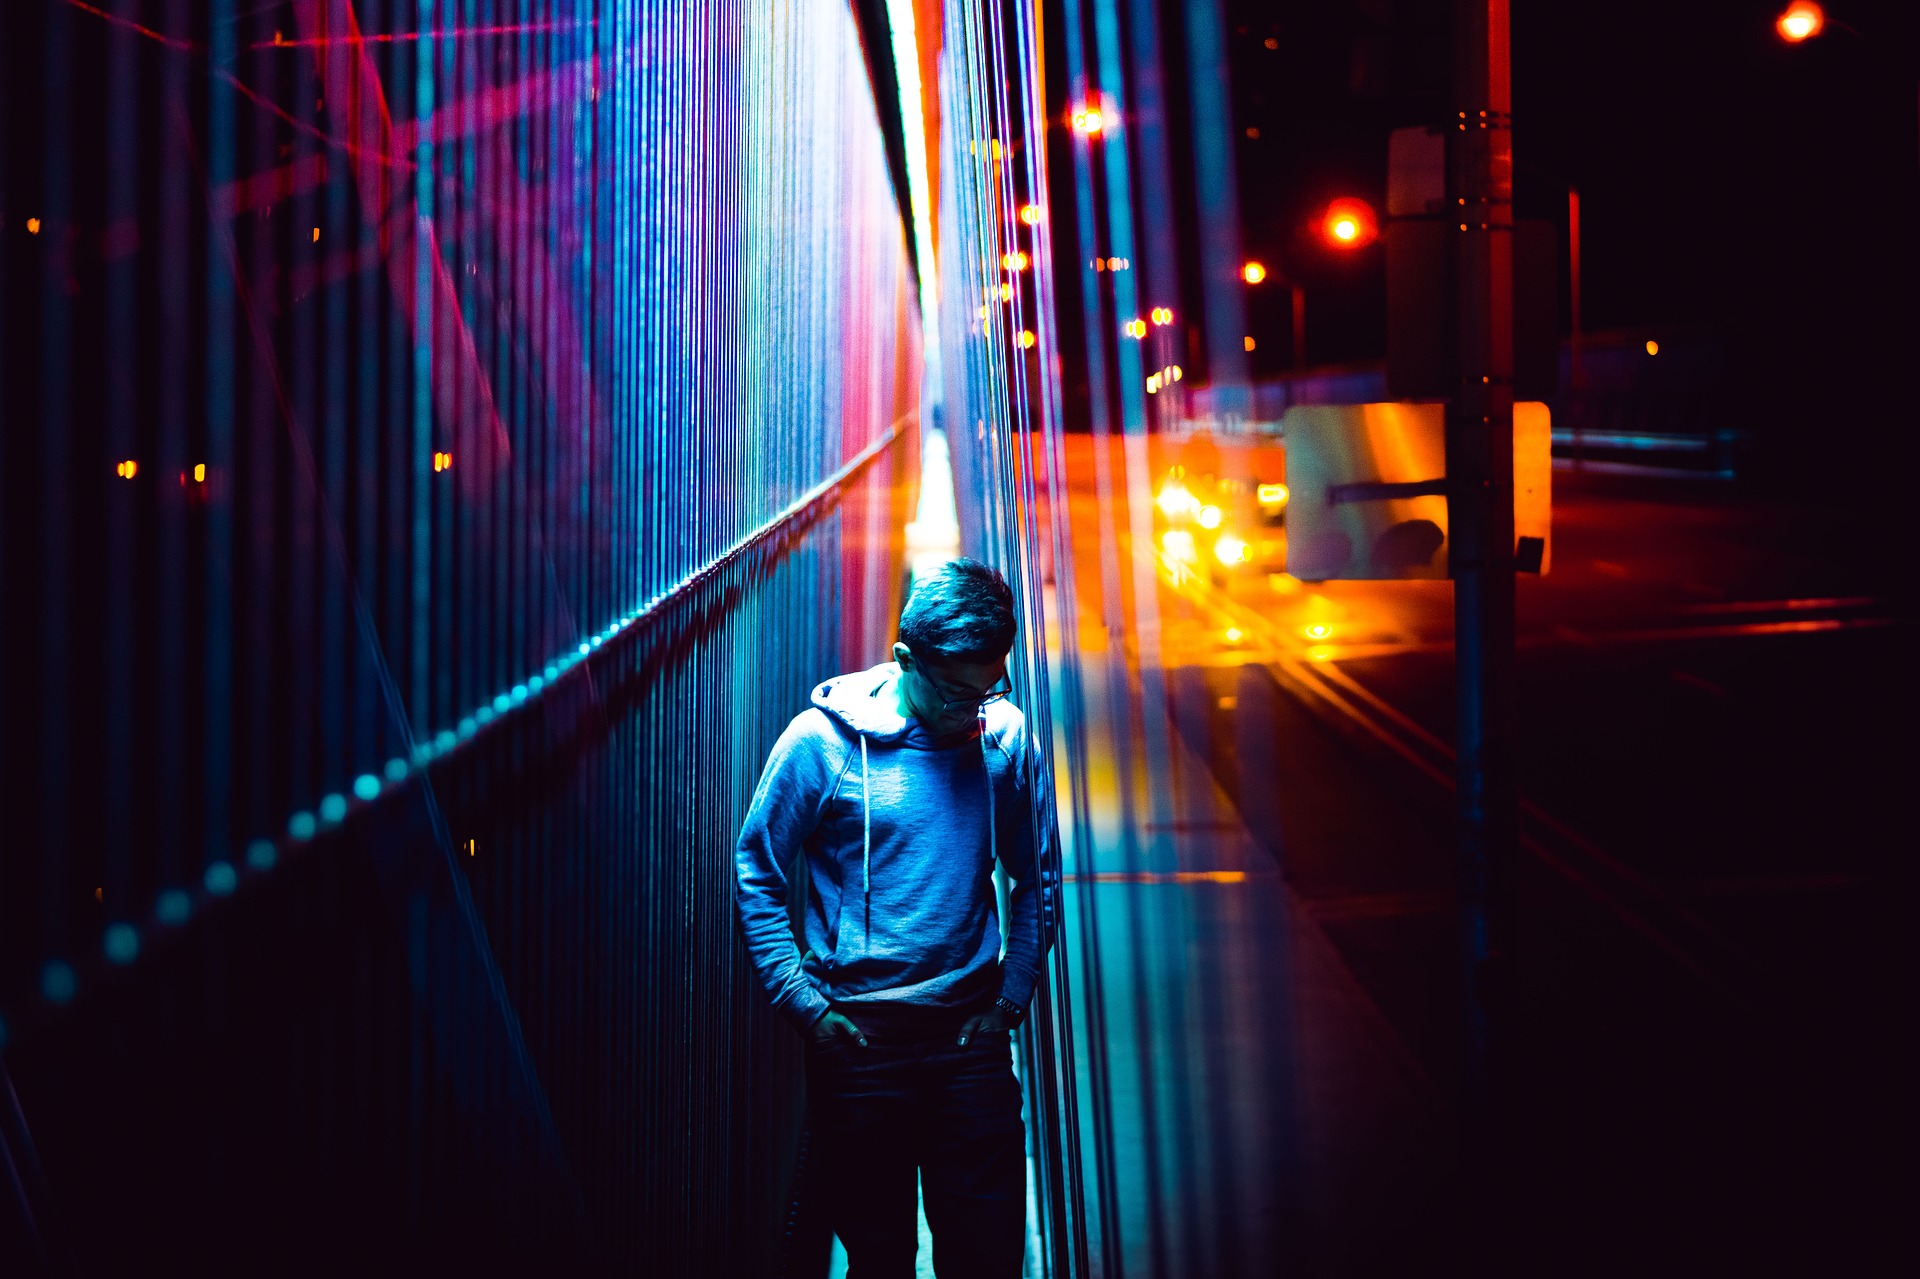 Gece vakti sokak lambalarıyla ışık oyunlarının arasında yürüyor.